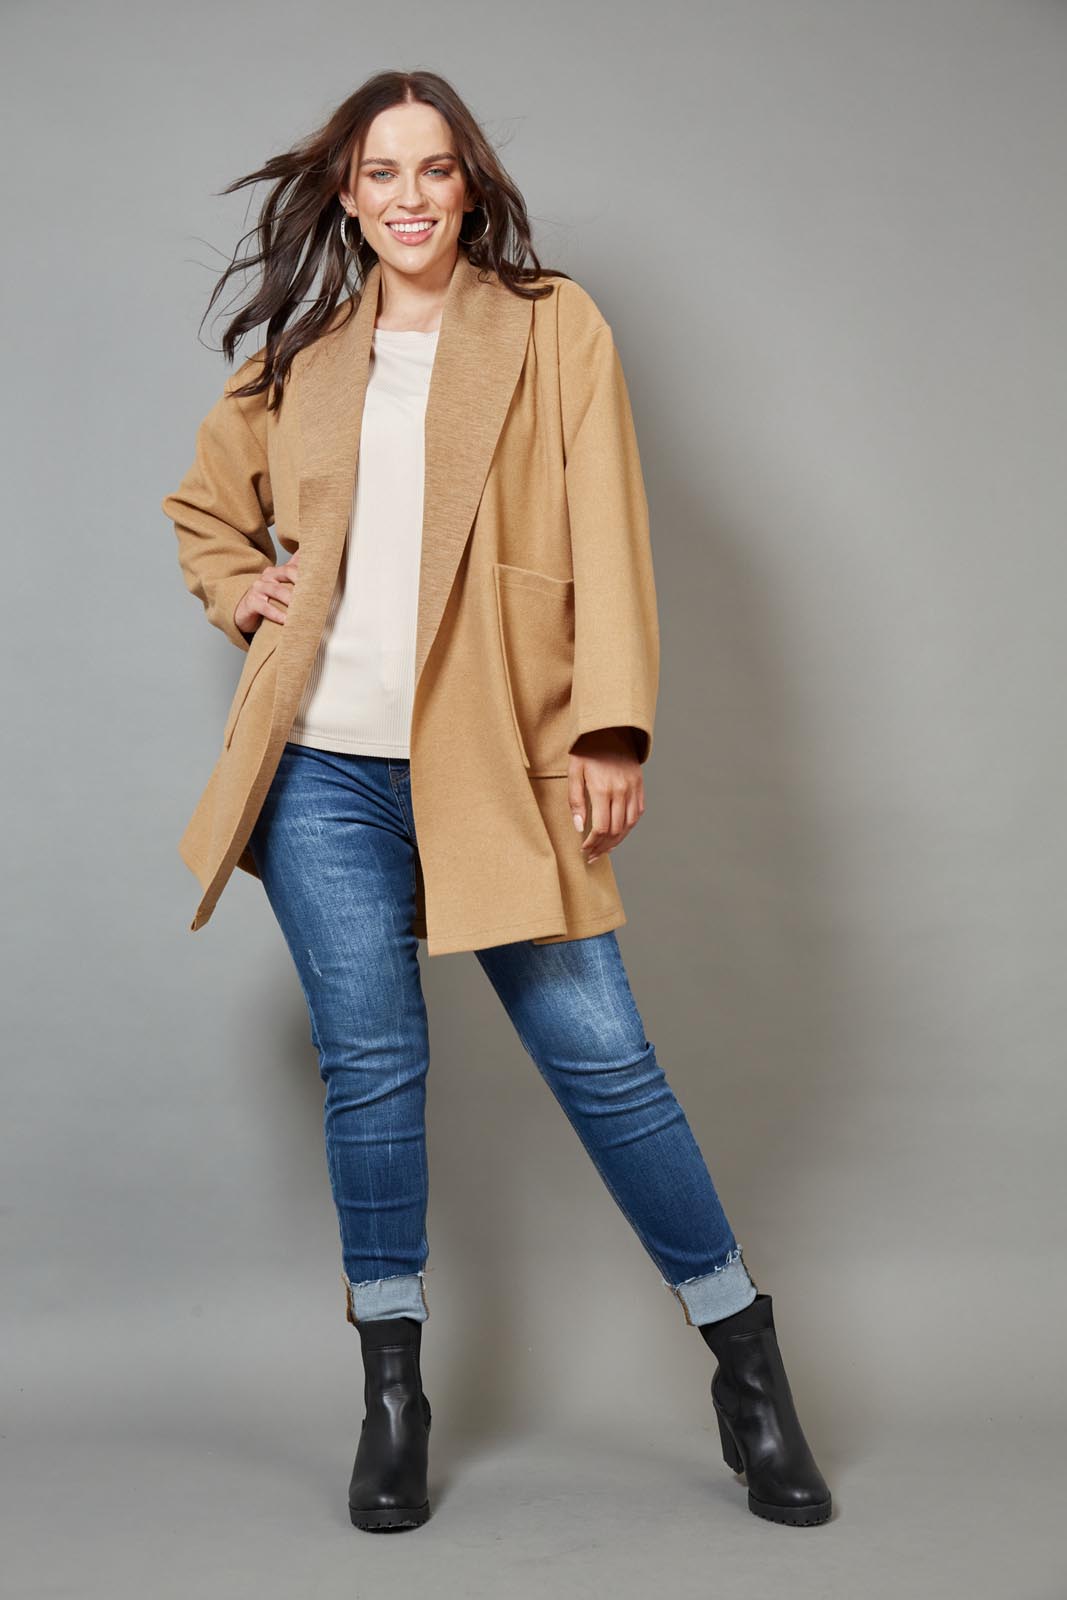 Klein Duster Coat - Camel - eb&ive Clothing - Jacket